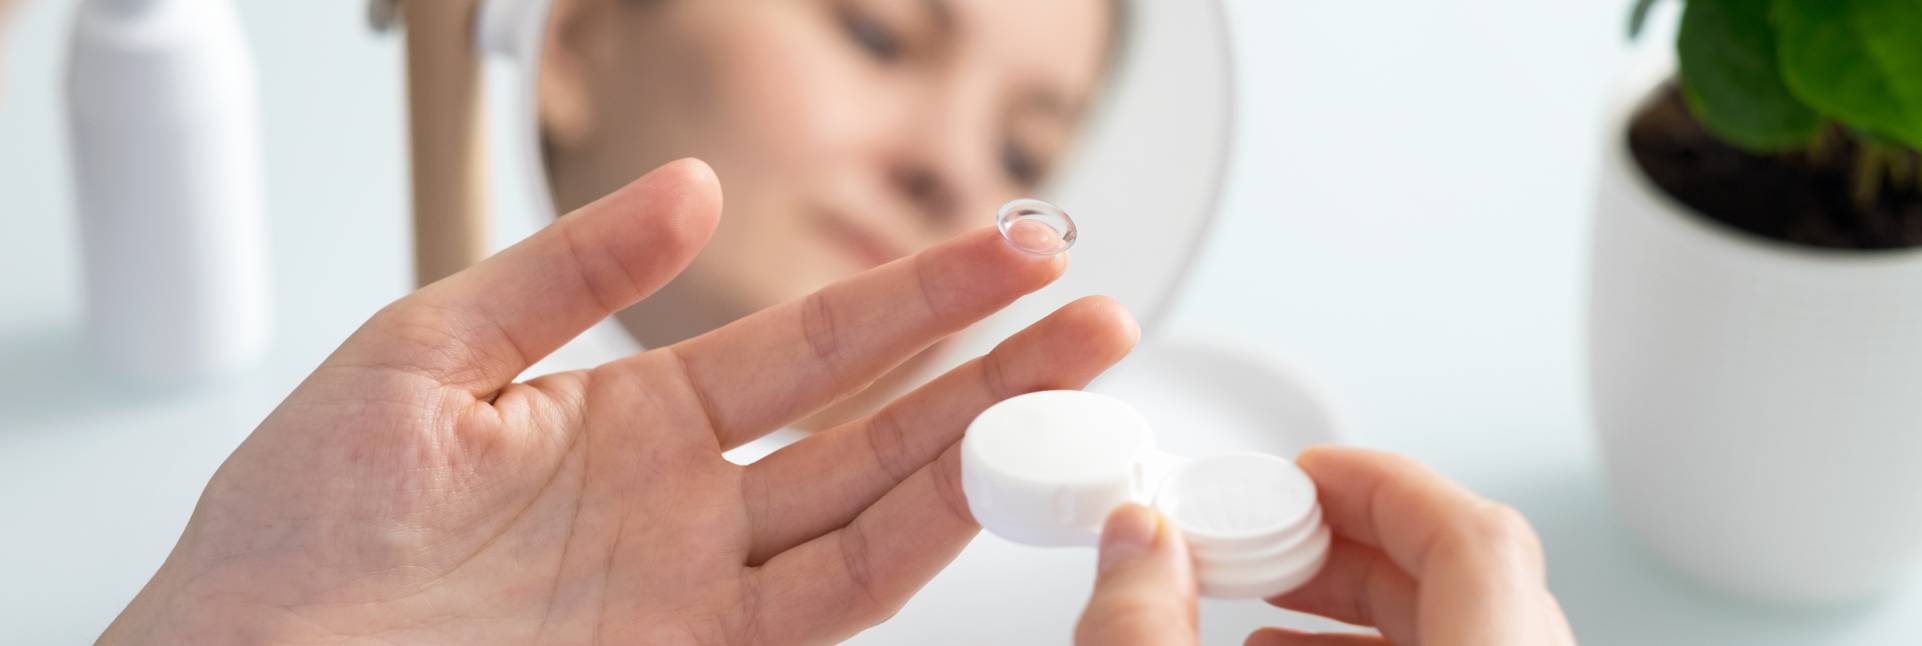 5 consejos para prevenir los ojos secos por lentillas